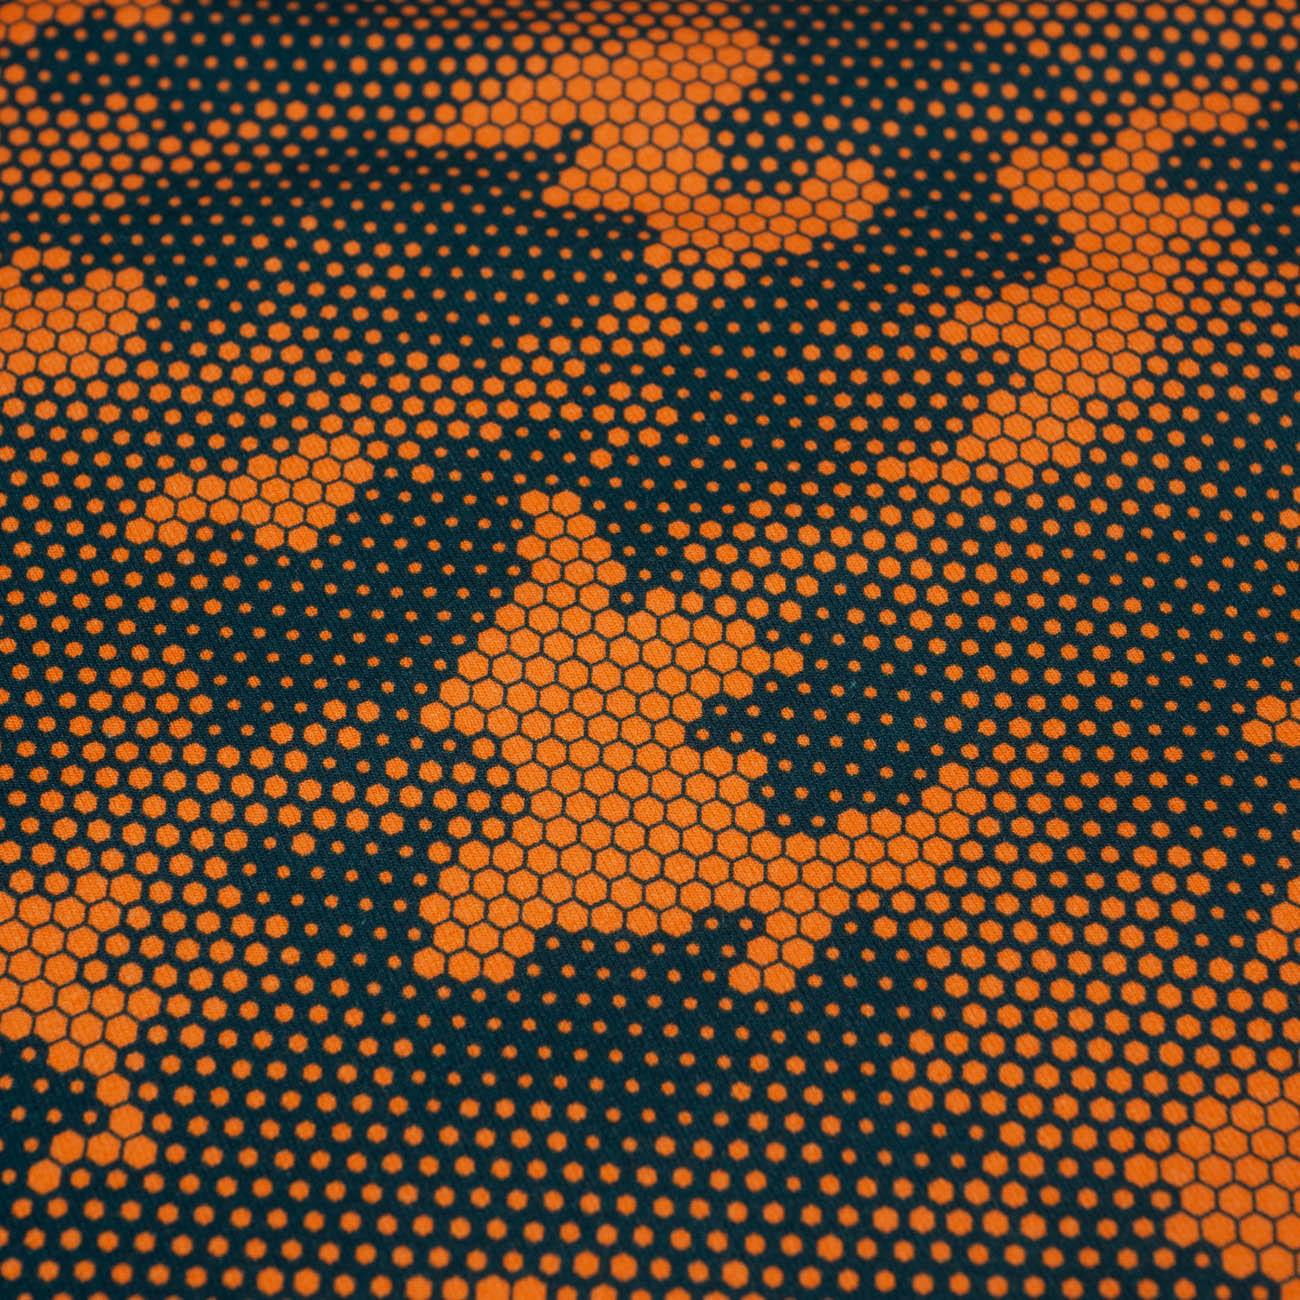 MORO PLASTER MIODU / pomarańczowy - single jersey 